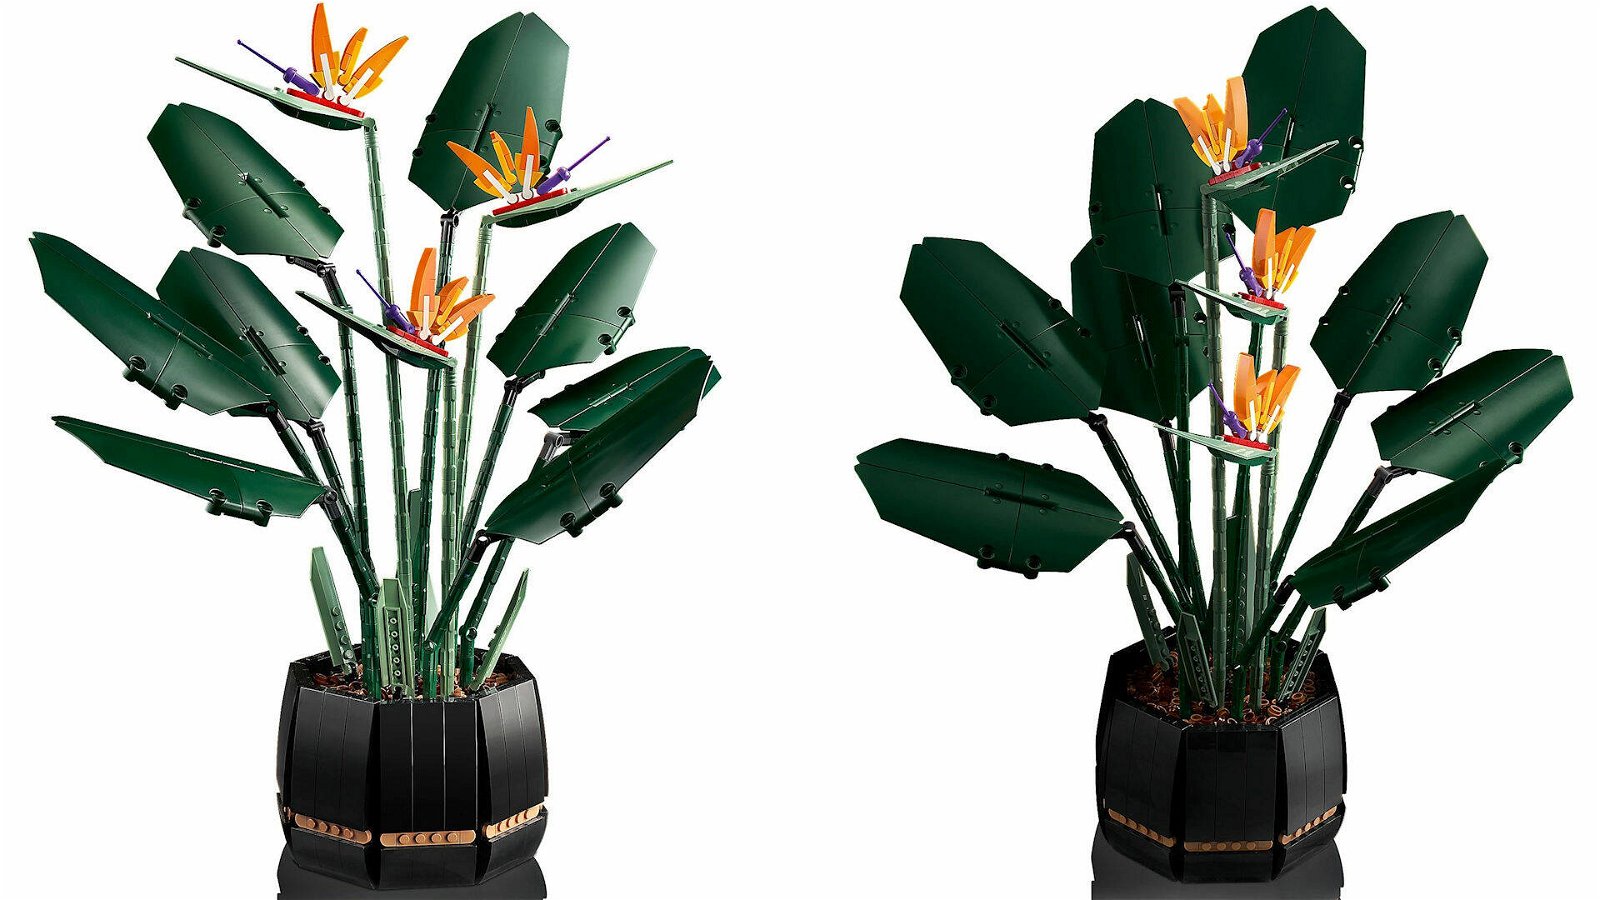 LEGO Botanical: la magia dei mattoncini per creare fiori e piante  ornamentali ecosostenibili